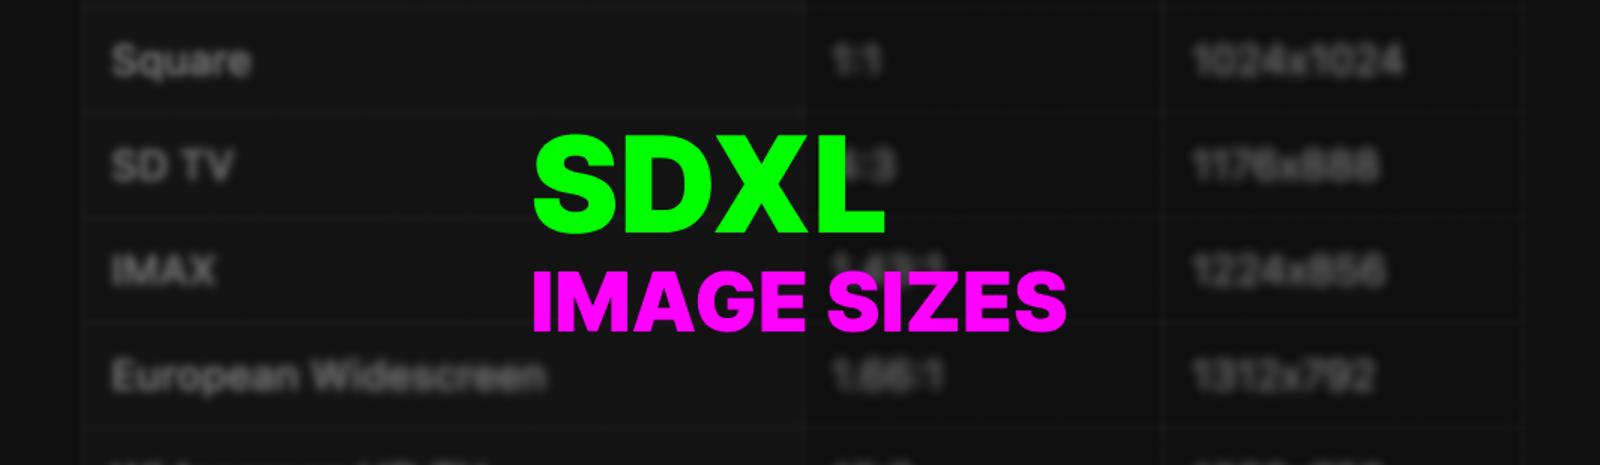 SDXL Image Size Cheat Sheet